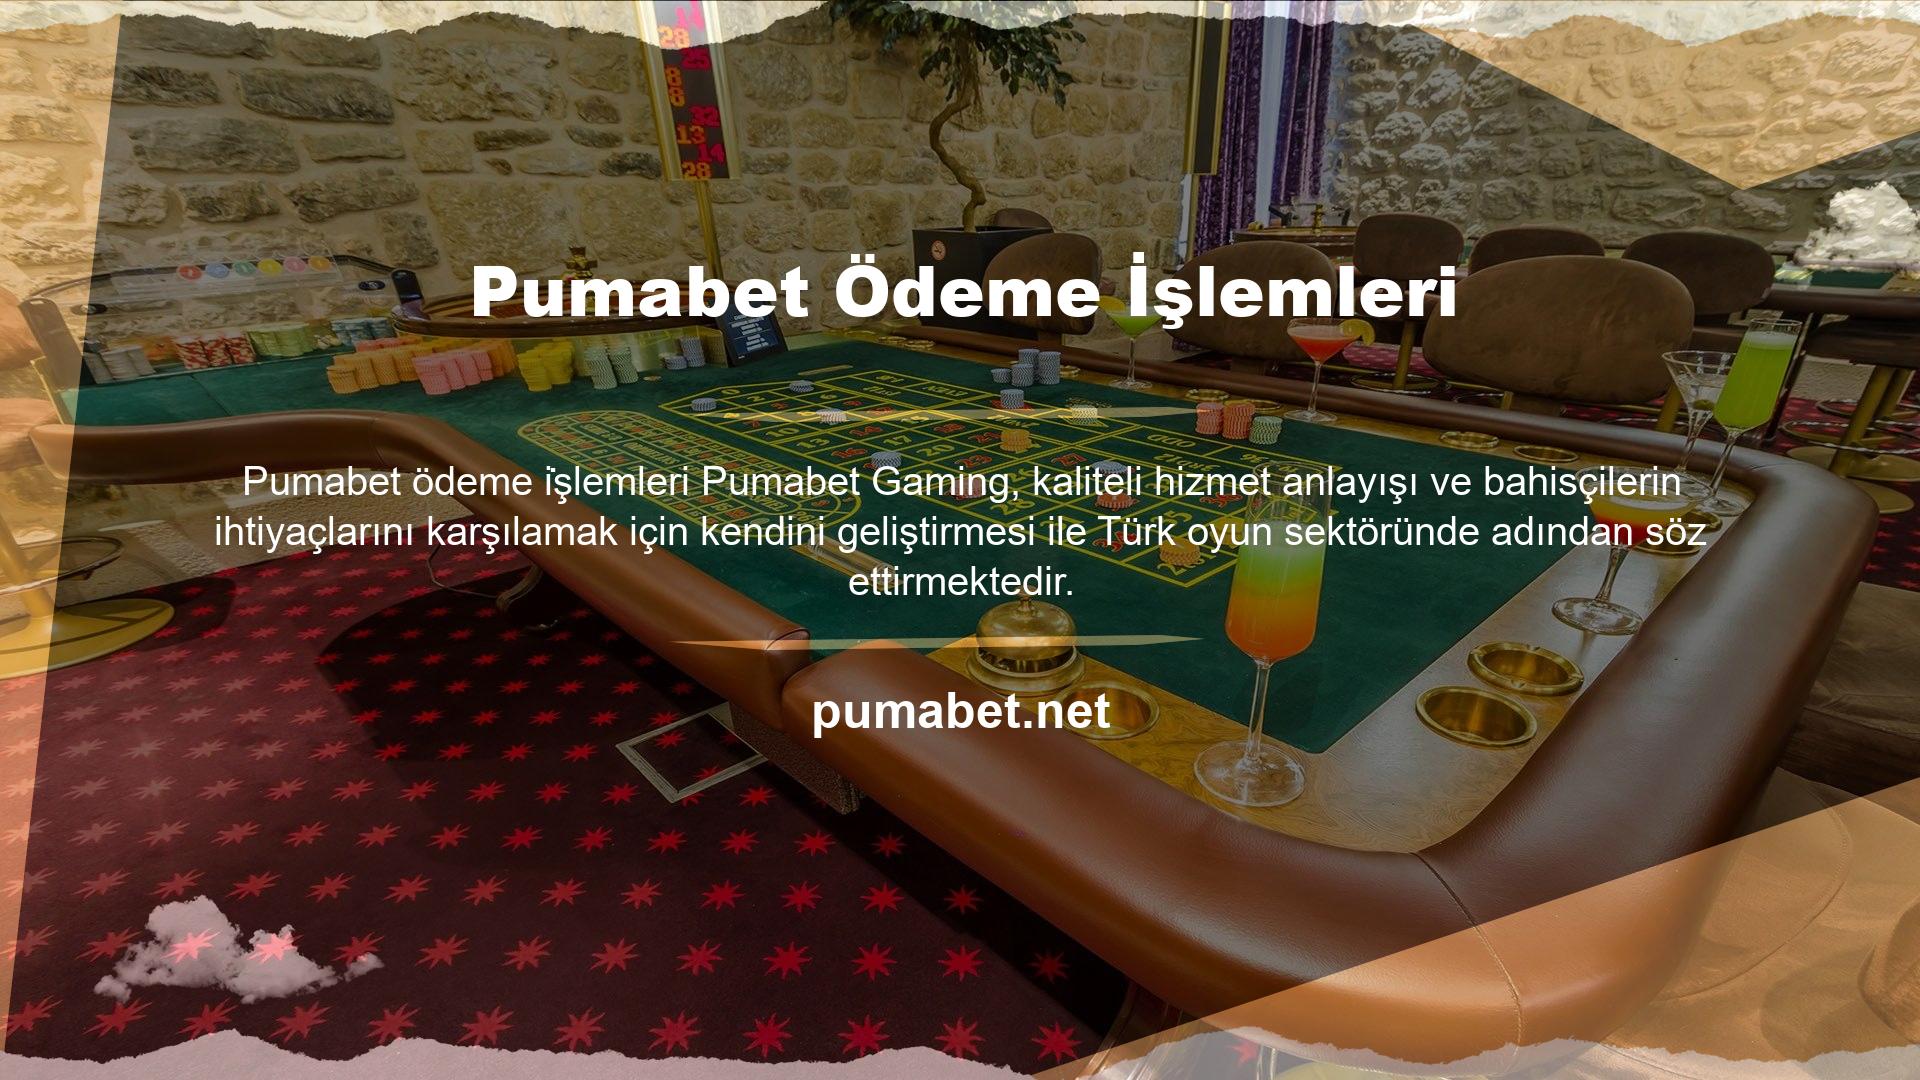 Pumabet online oyun platformuna güncel alan adınız ile üye olabilir, çeşitli oyun içeriklerini yatırabilir ve ticaretini yapabilirsiniz